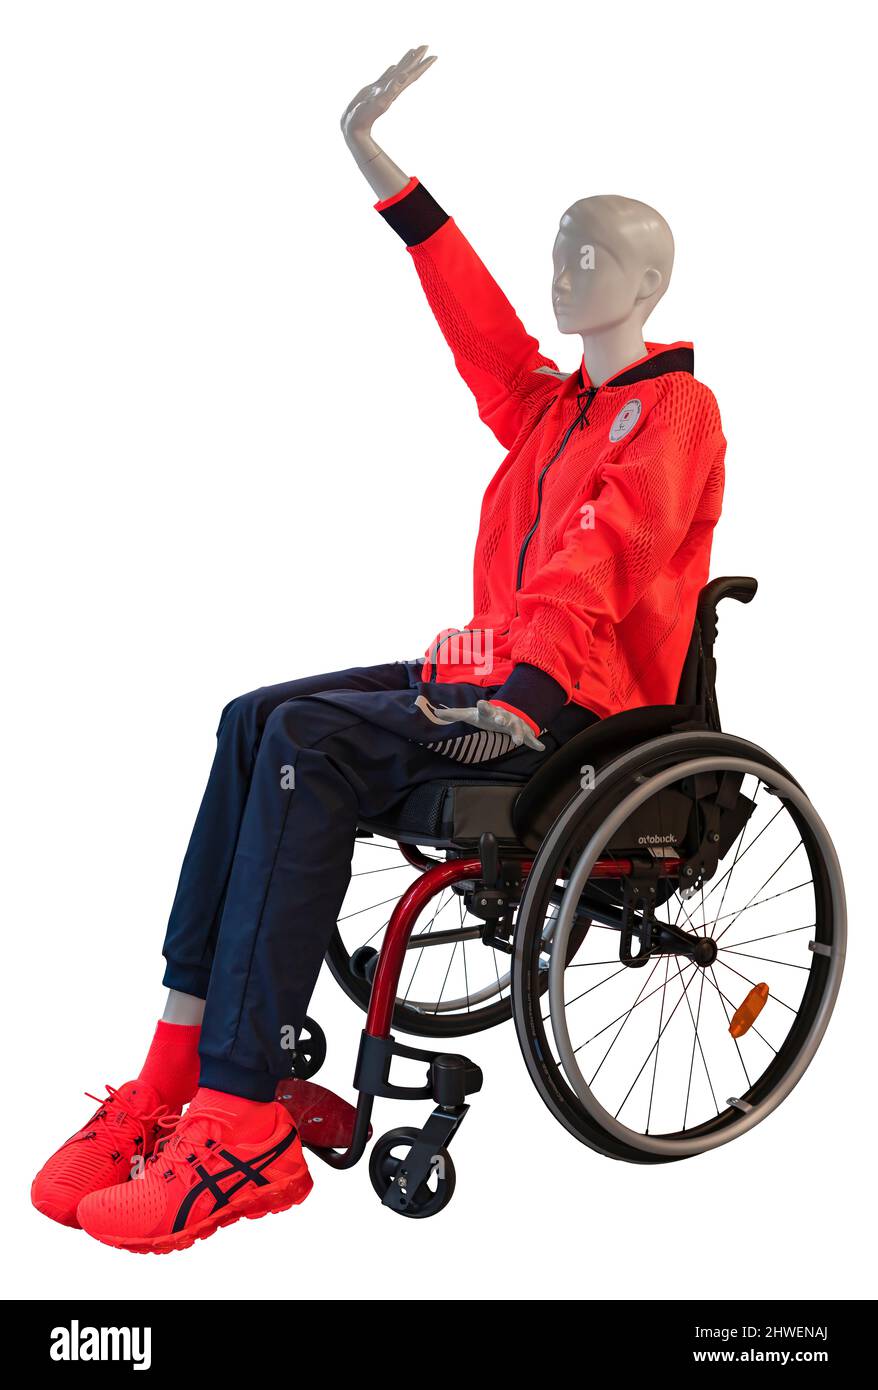 tokyo, giappone - agosto 30 2021: Clipping isolato fotografia di un manichino raffigurante un atleta disabile seduto su una sedia a rotelle e che indossa la offic Foto Stock